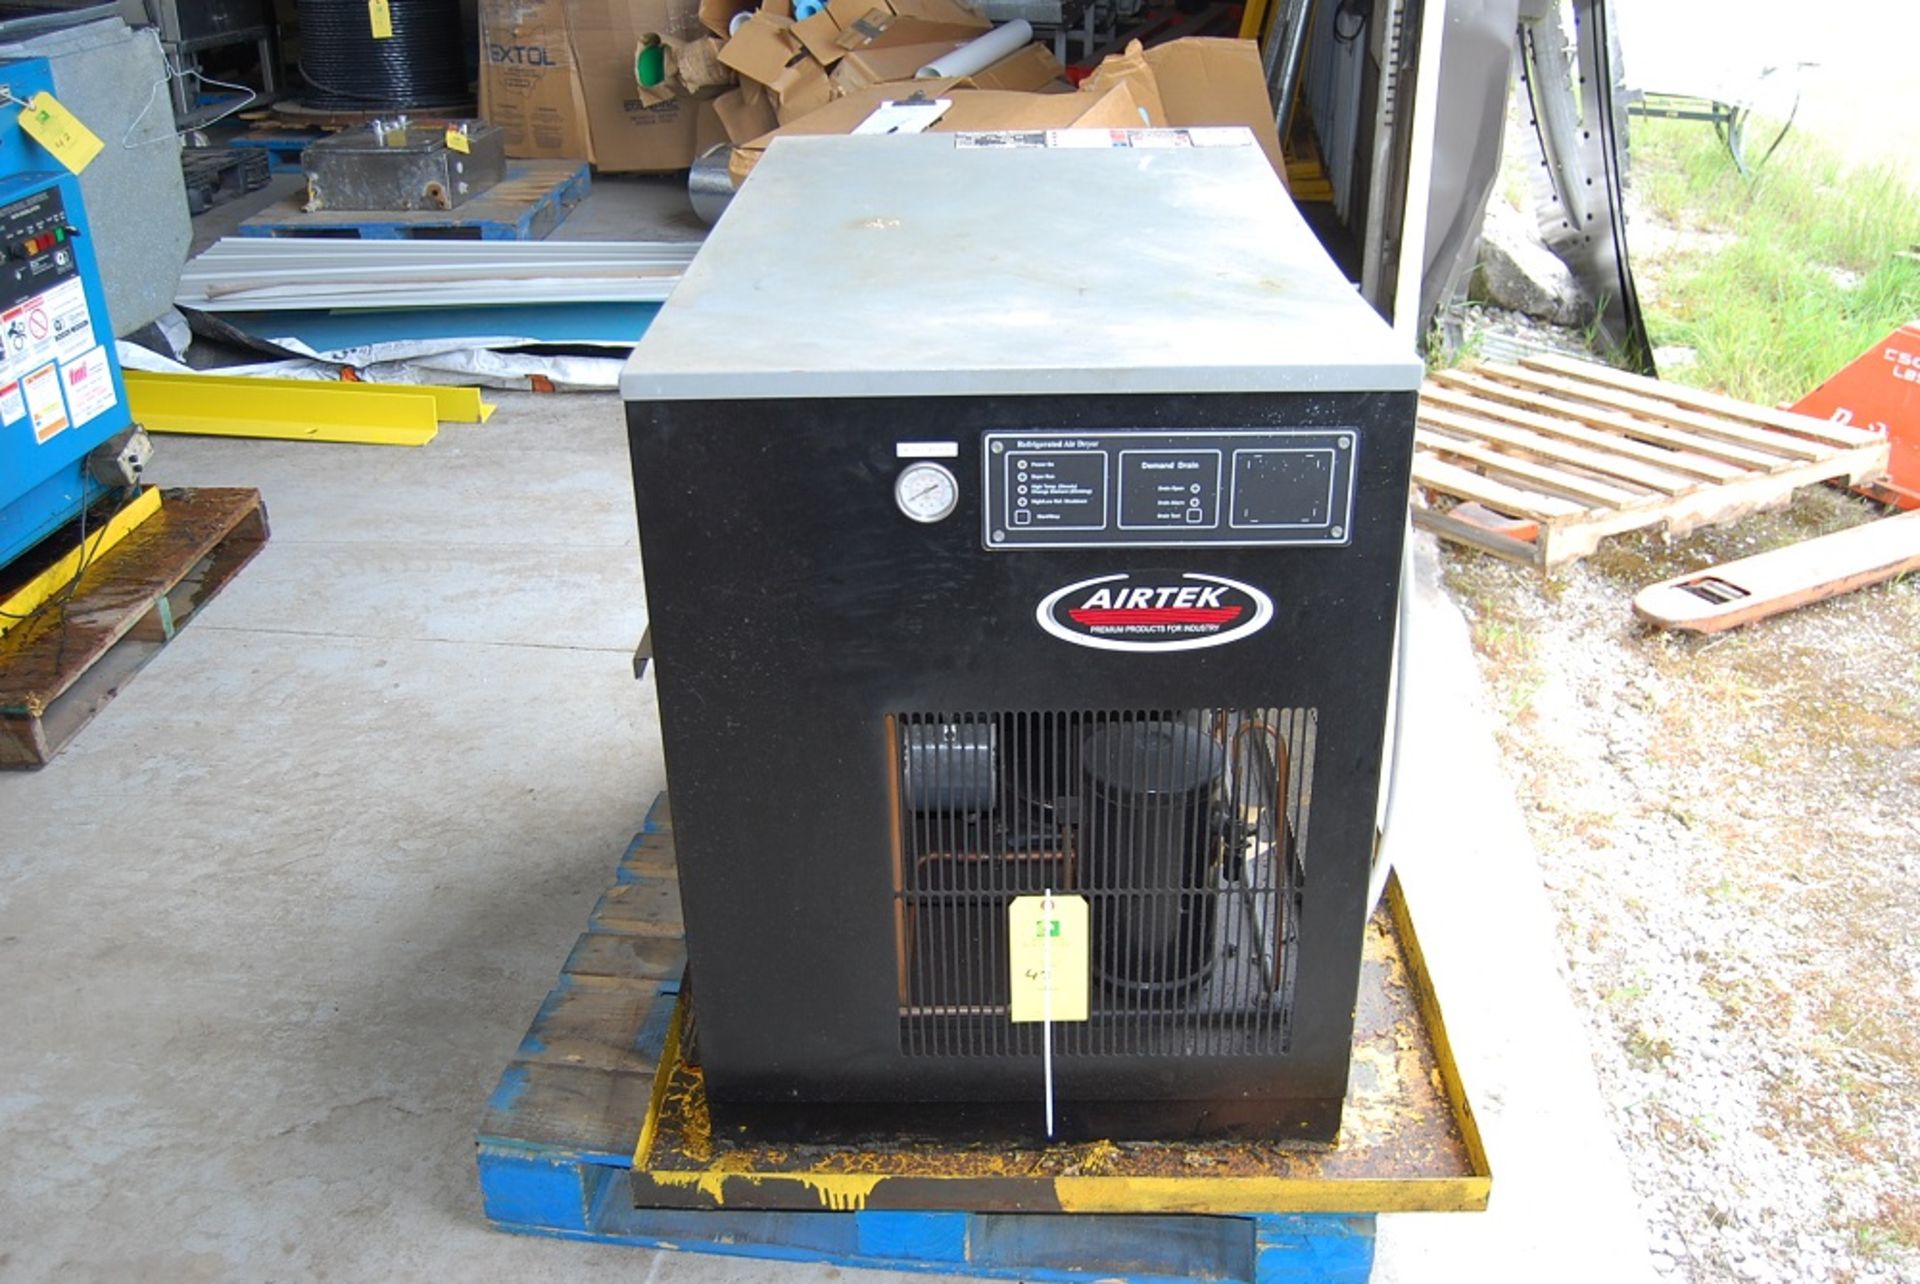 Airtek Air Dryer, Model: DA500-A4, SN: 080300118 460 volts 3 phase, Foot print: 46" x 28" x 36" tall